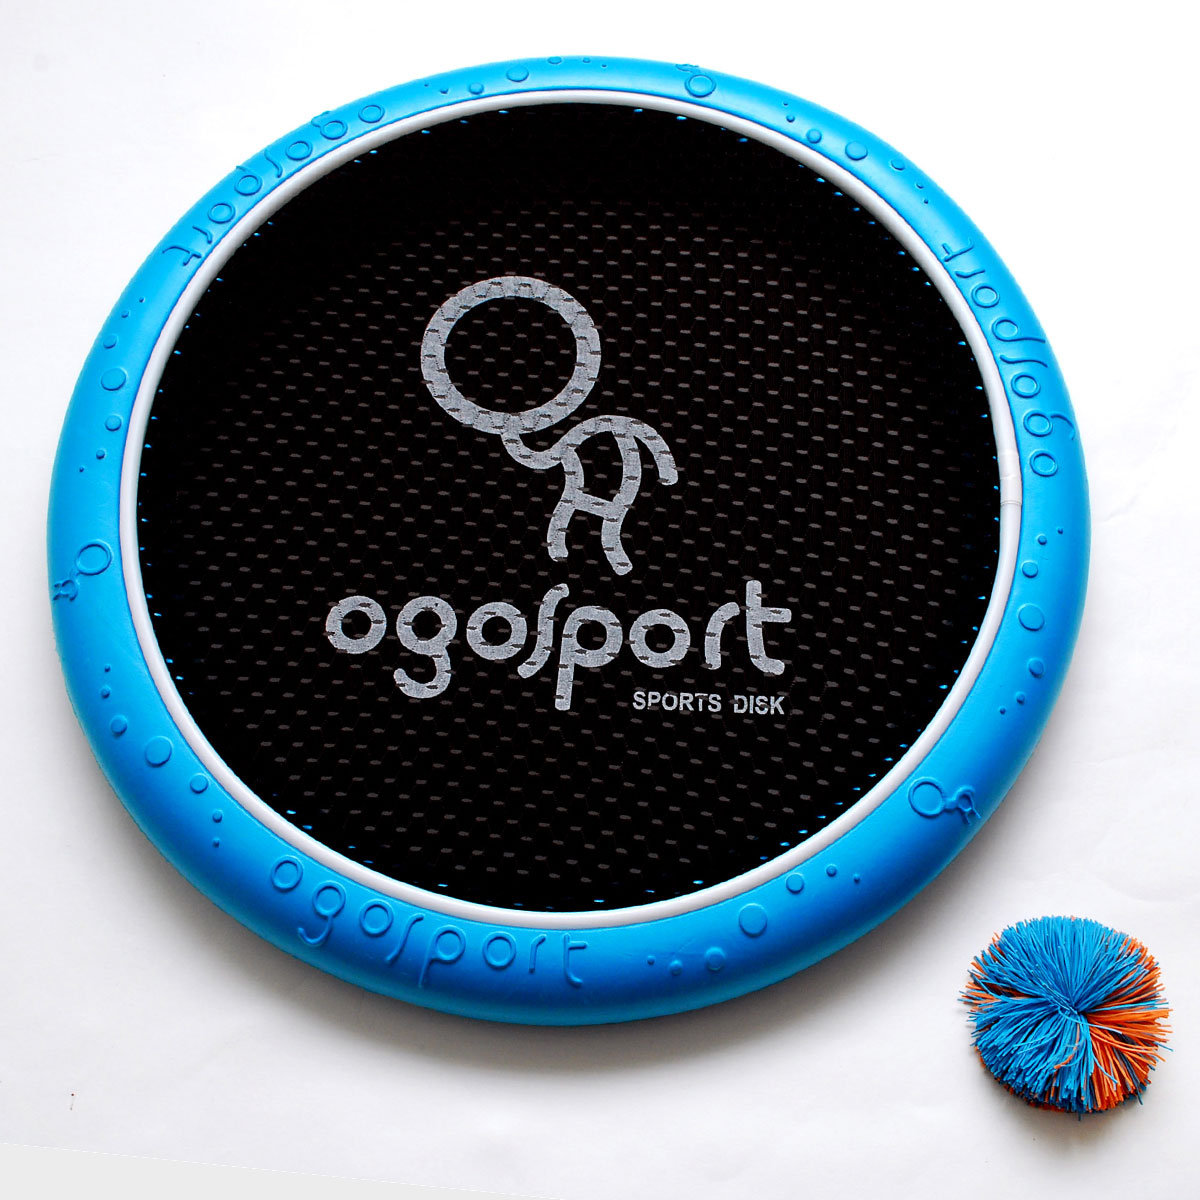 Набор для игры OgoSport OgoDisk Max  